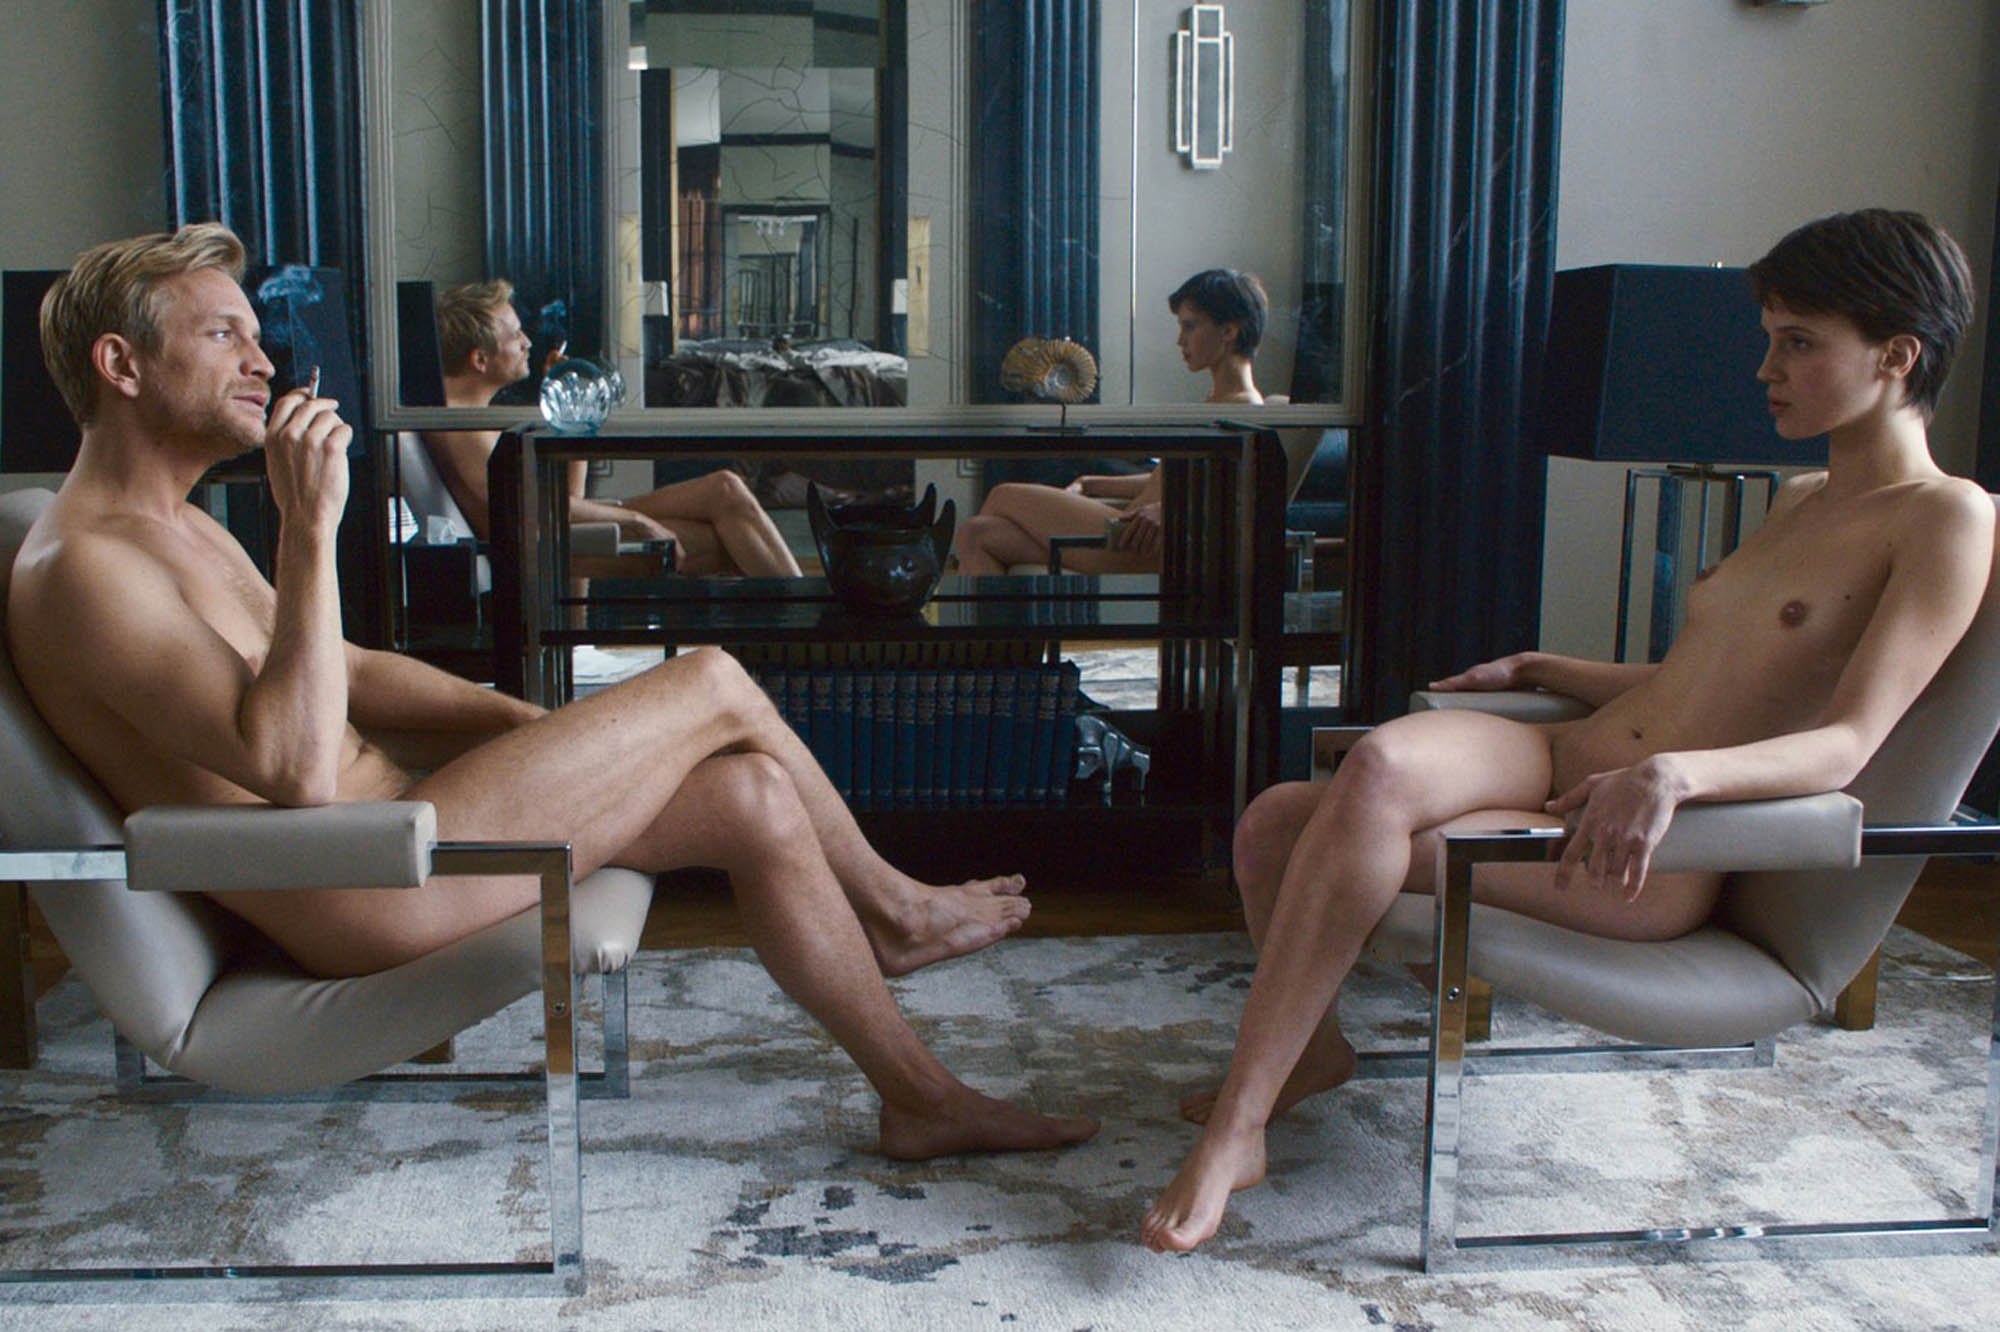 Femmes nues féminages au foyer Russe photo